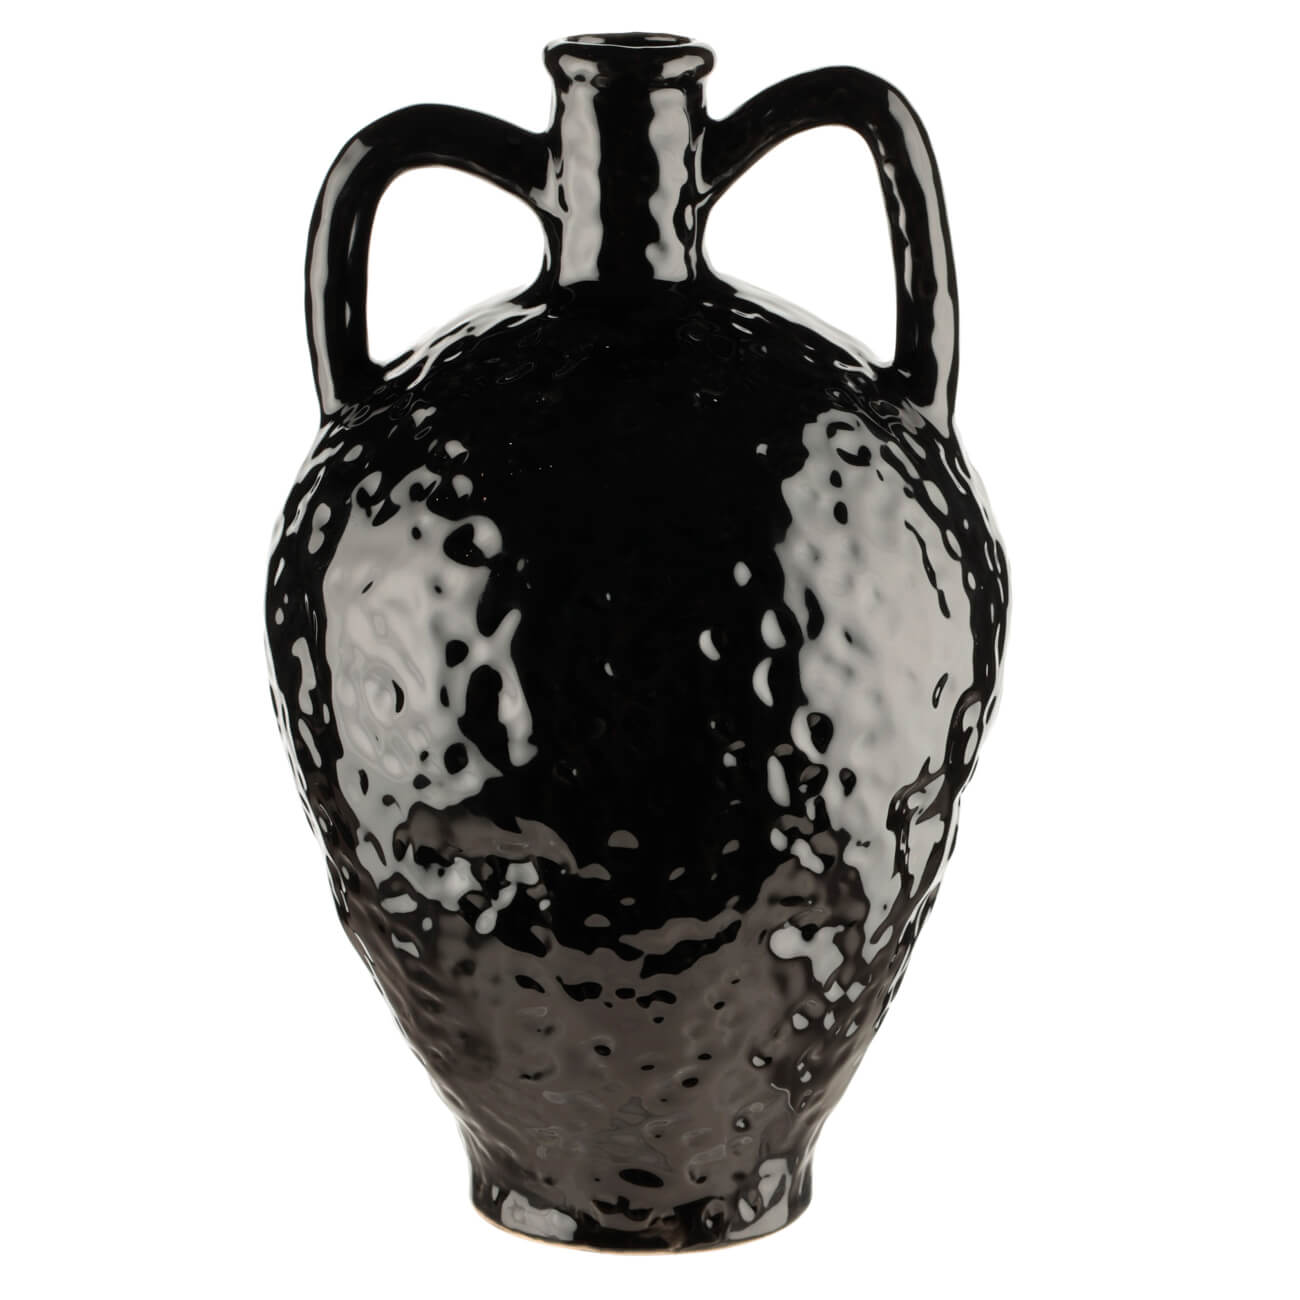 ваза одуванчик гжель фарфор 10 см Ваза для цветов, 26 см, декоративная, с ручками, фарфор P, черная, Minimalism